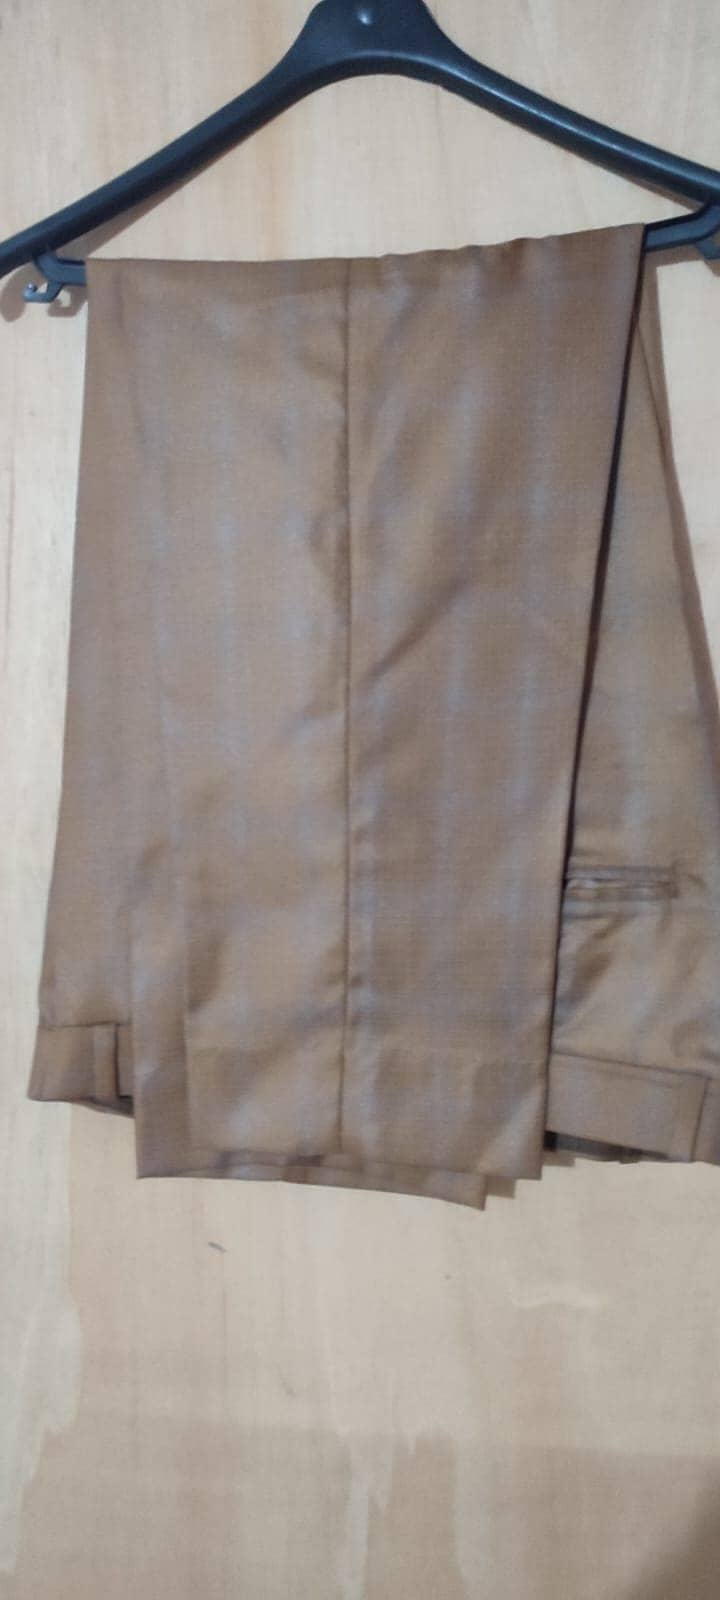 New Coat Pant with Waistcoat 3